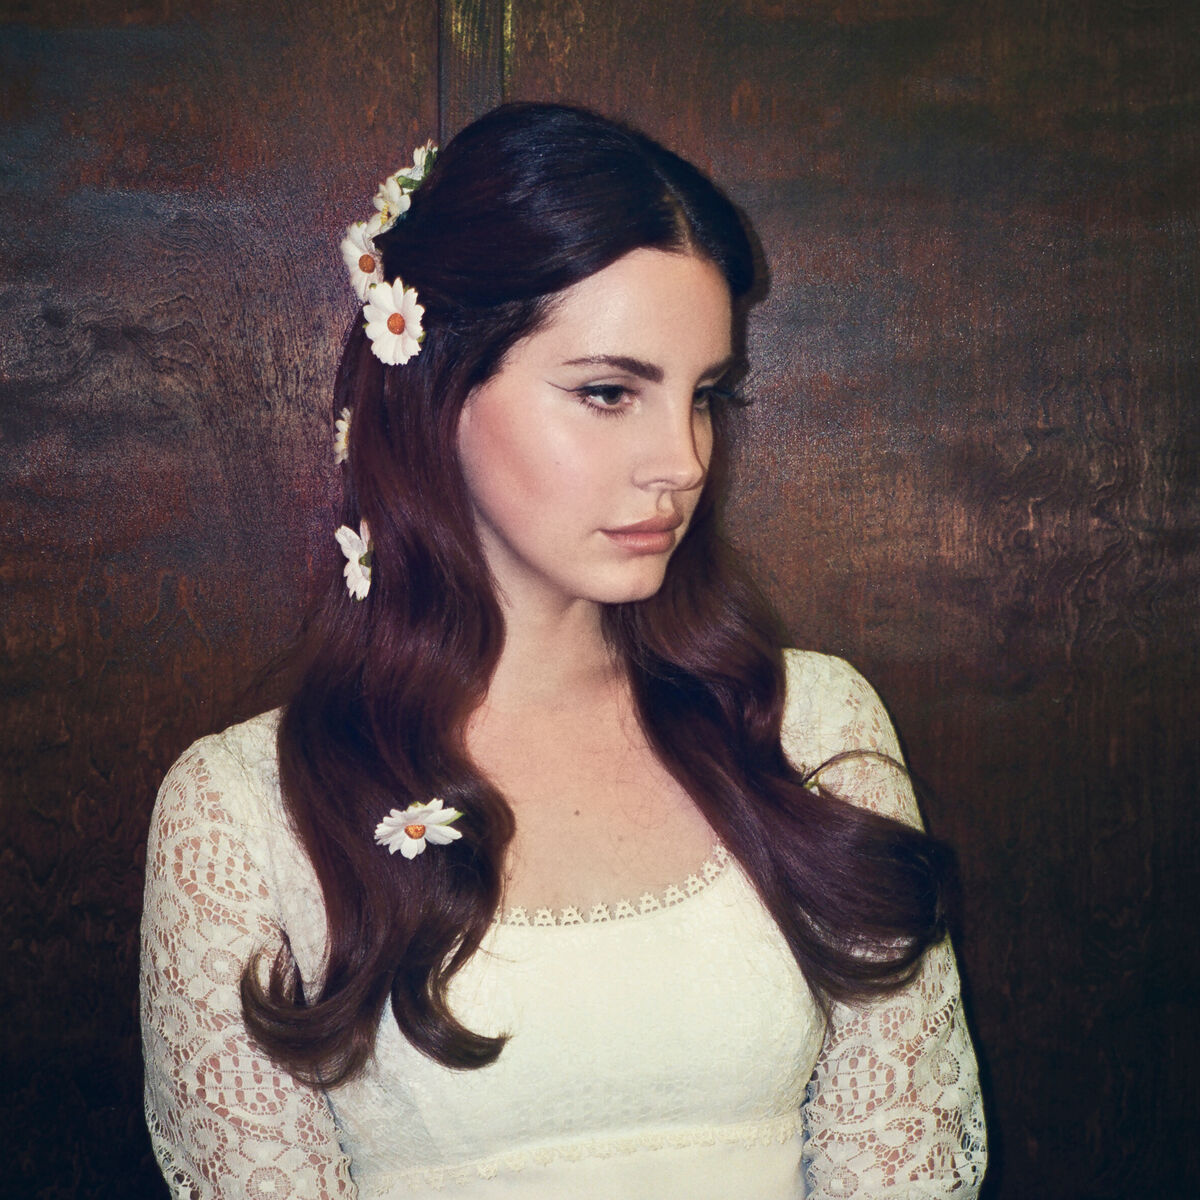 Coachella Woodstock In My Mind Song Lana Del Rey Wiki Fandom